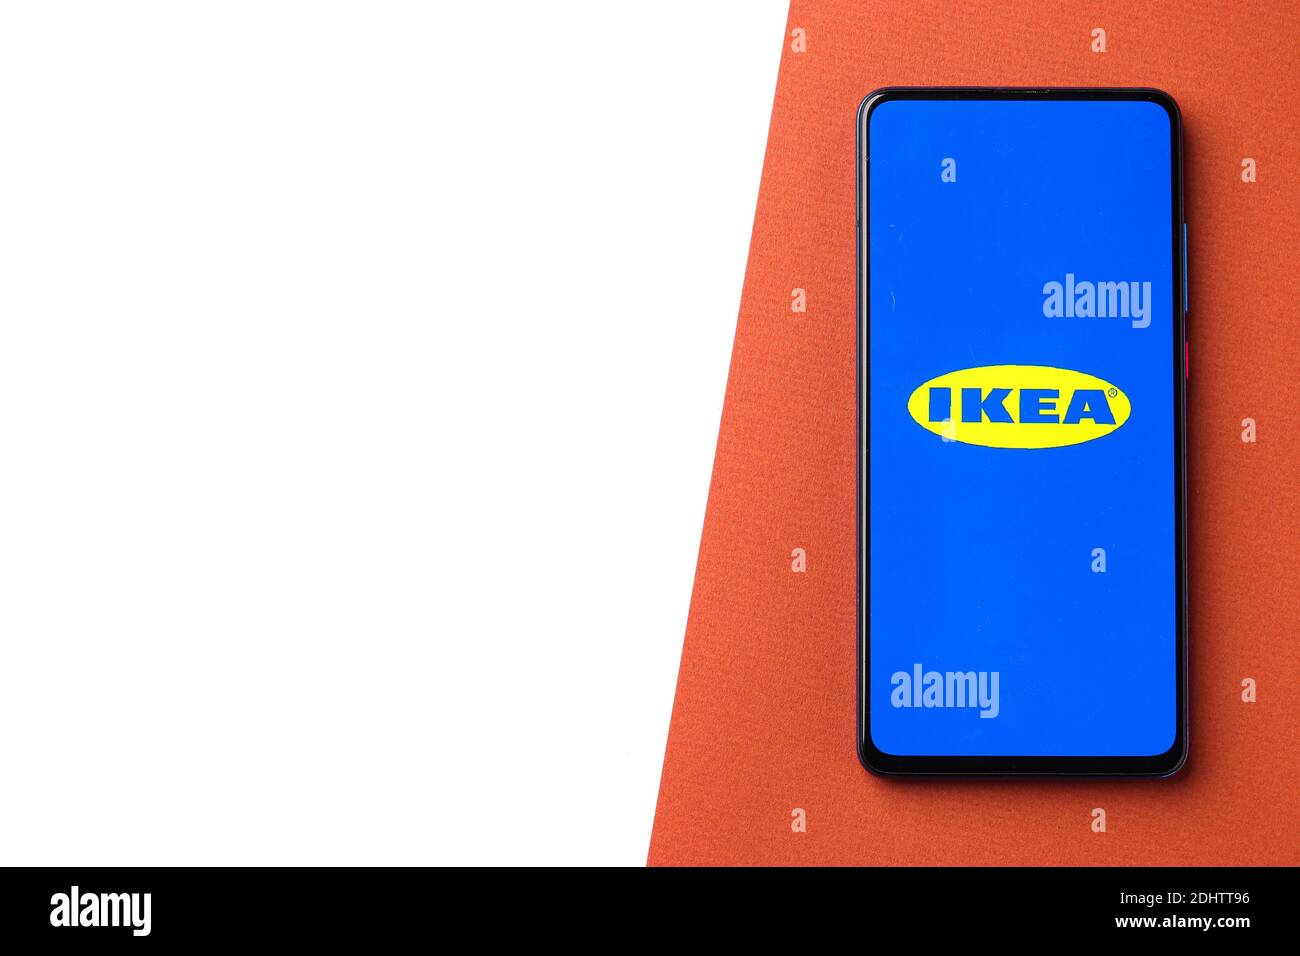 Assam, inde - 20 décembre 2020 : logo Ikea sur image de stock d'écran de téléphone. Banque D'Images